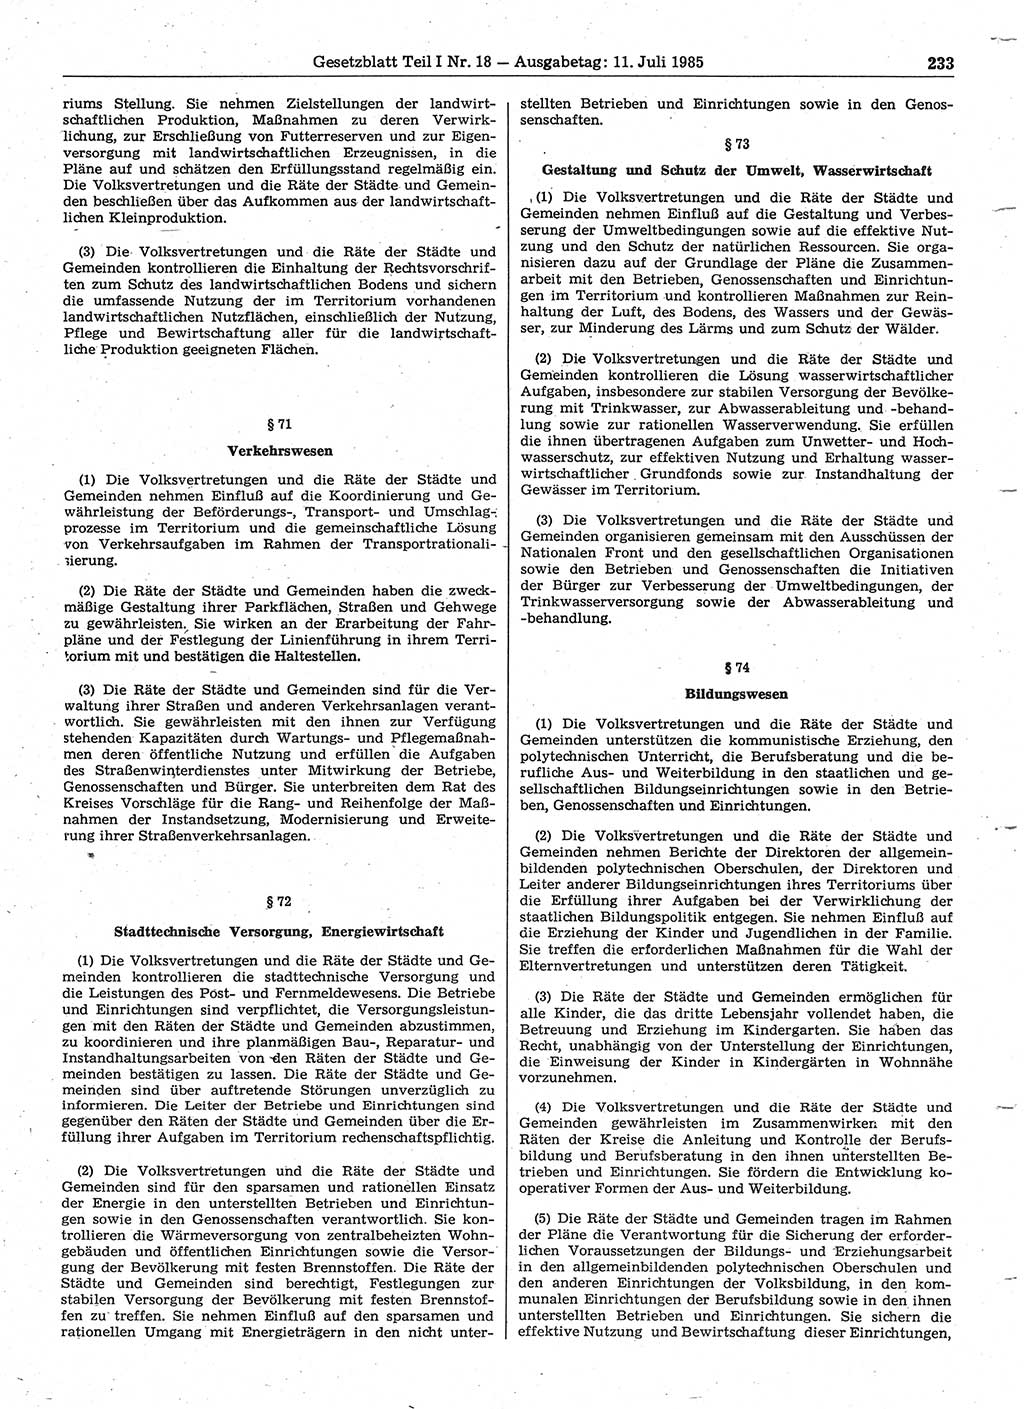 Gesetzblatt (GBl.) der Deutschen Demokratischen Republik (DDR) Teil Ⅰ 1985, Seite 233 (GBl. DDR Ⅰ 1985, S. 233)